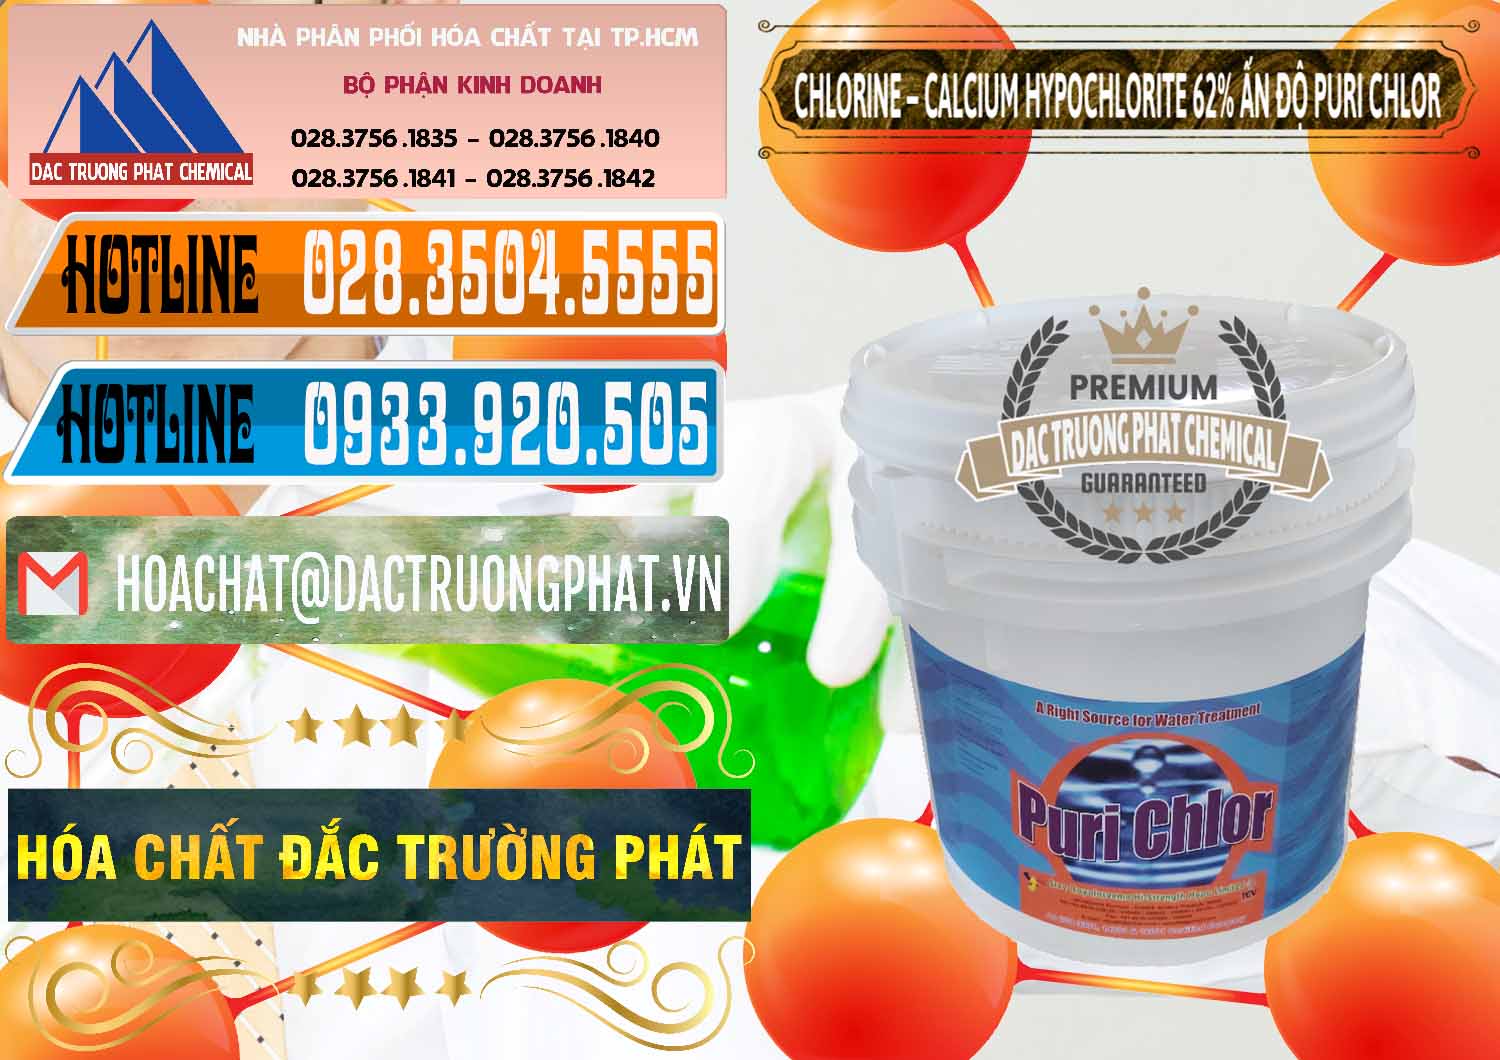 Cty phân phối & bán Chlorine – Clorin 62% Puri Chlo Ấn Độ India - 0052 - Công ty cung cấp ( phân phối ) hóa chất tại TP.HCM - stmp.net